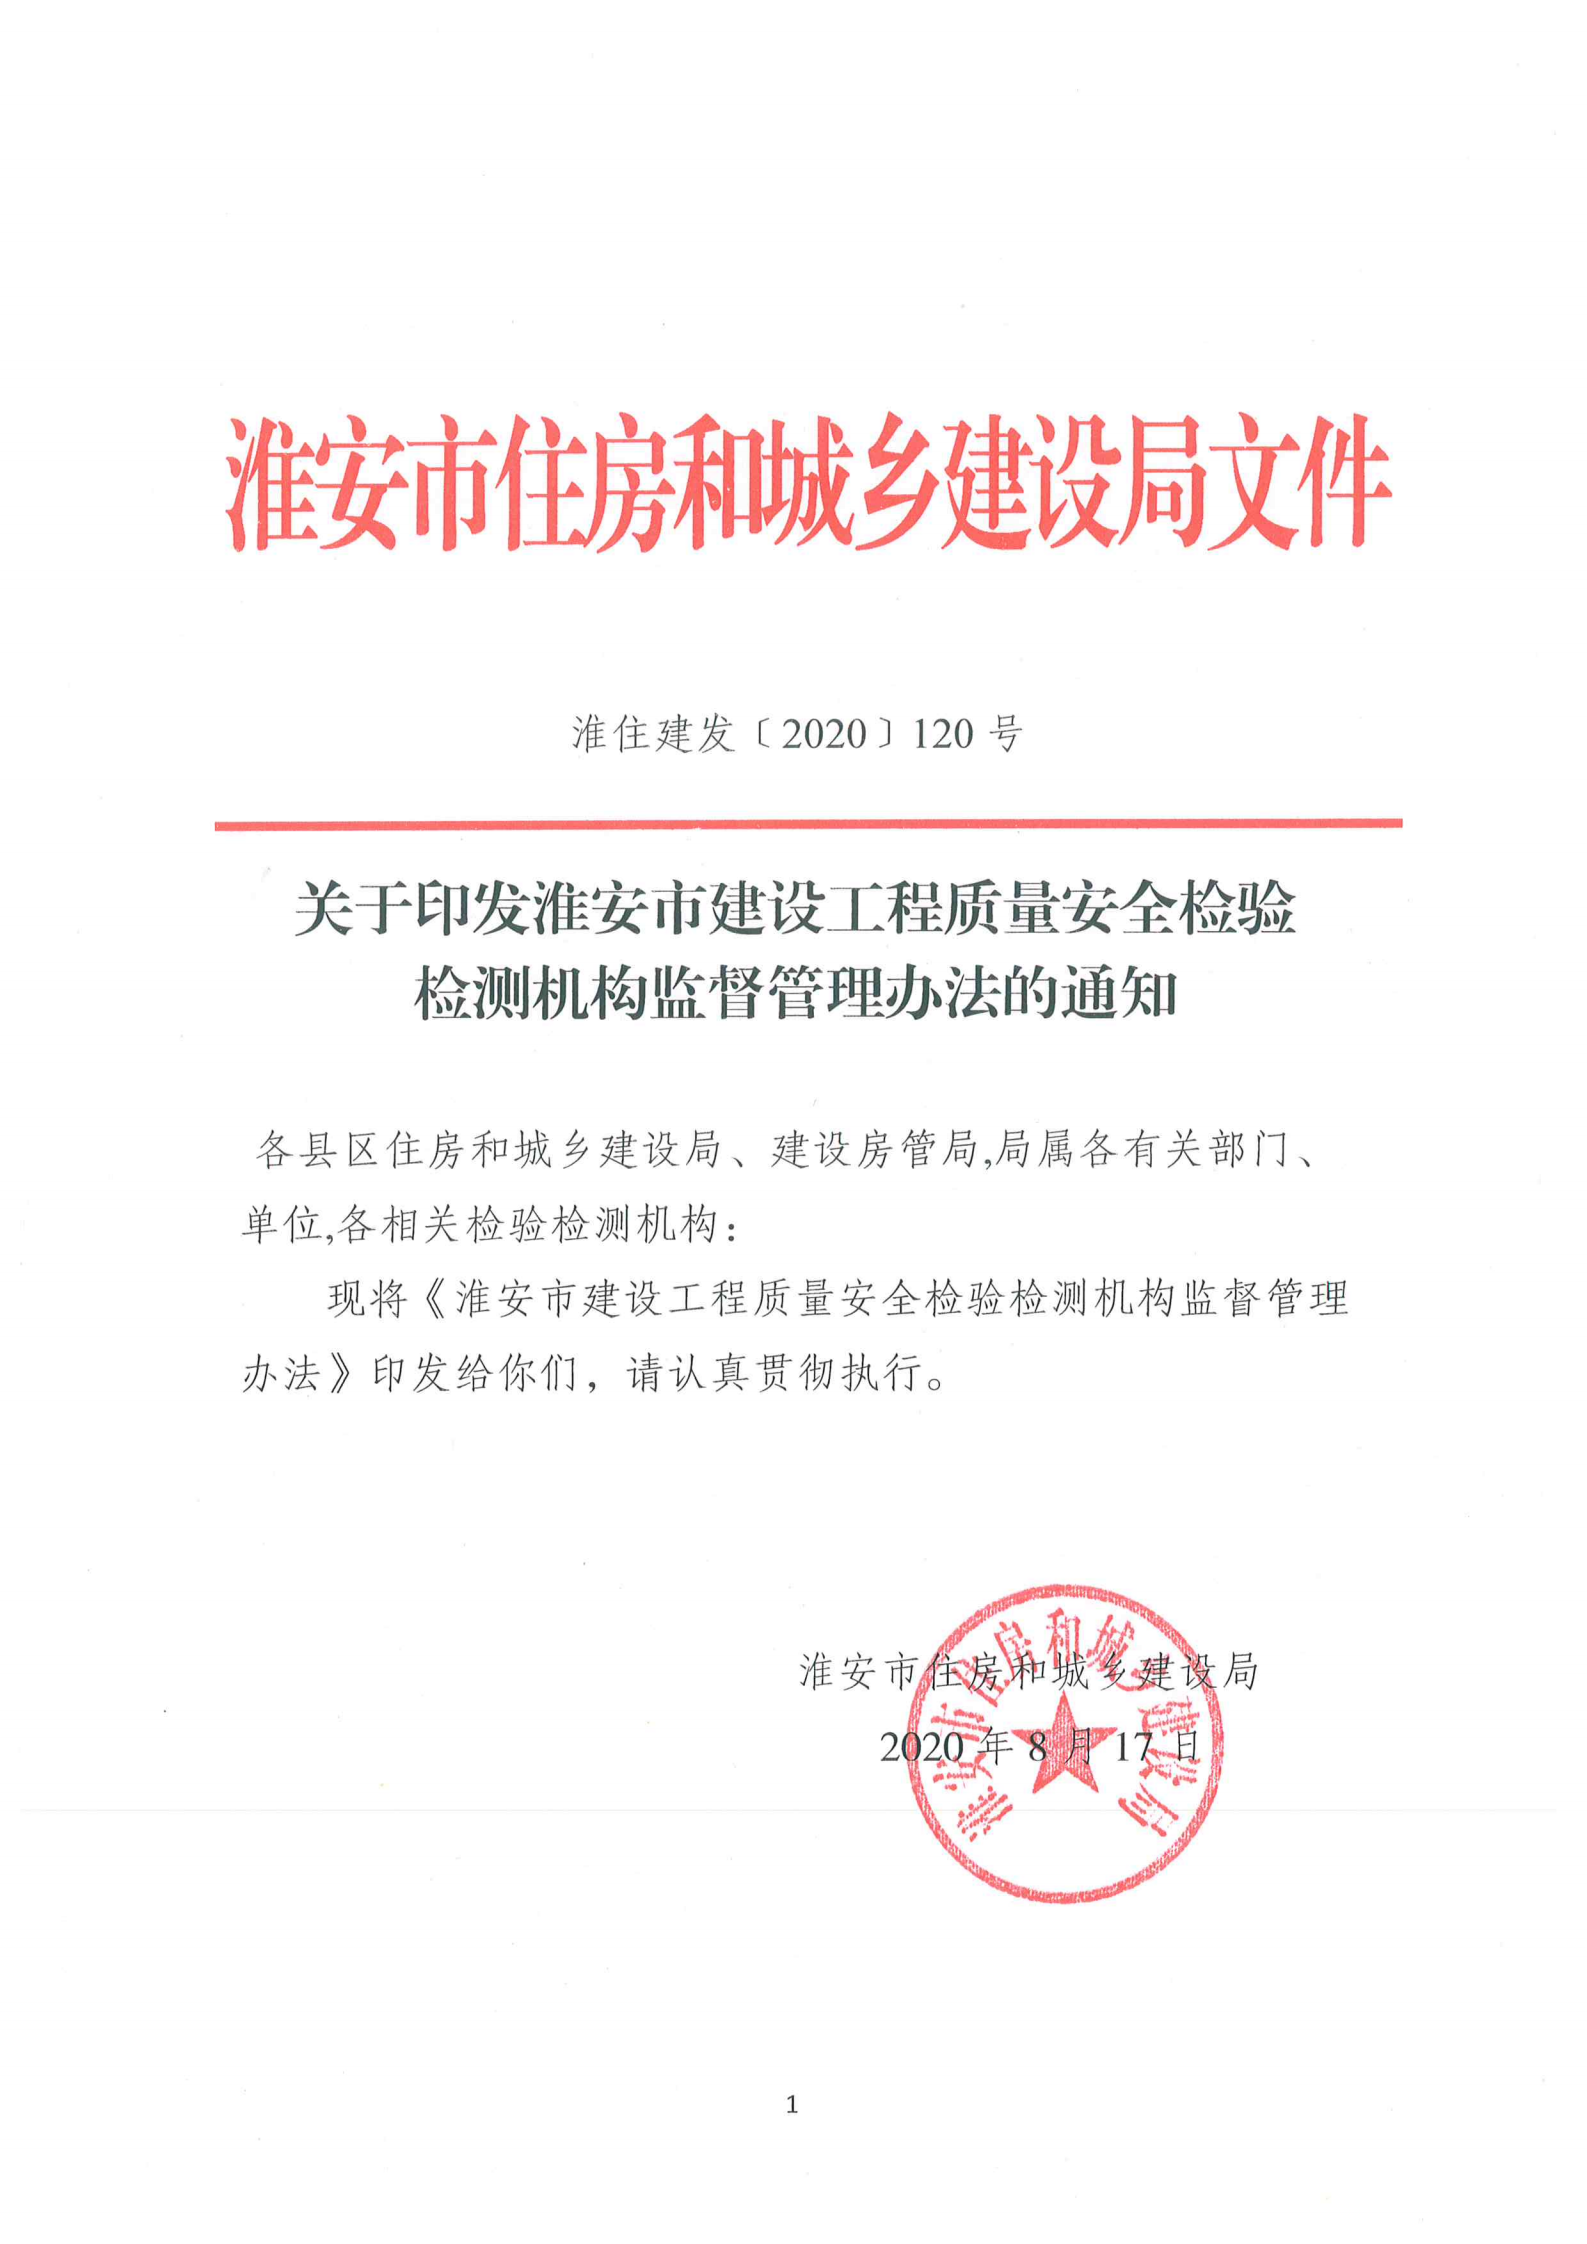 淮安市建設工程檢測機構監督管理辦法[2020]120號文_00.png